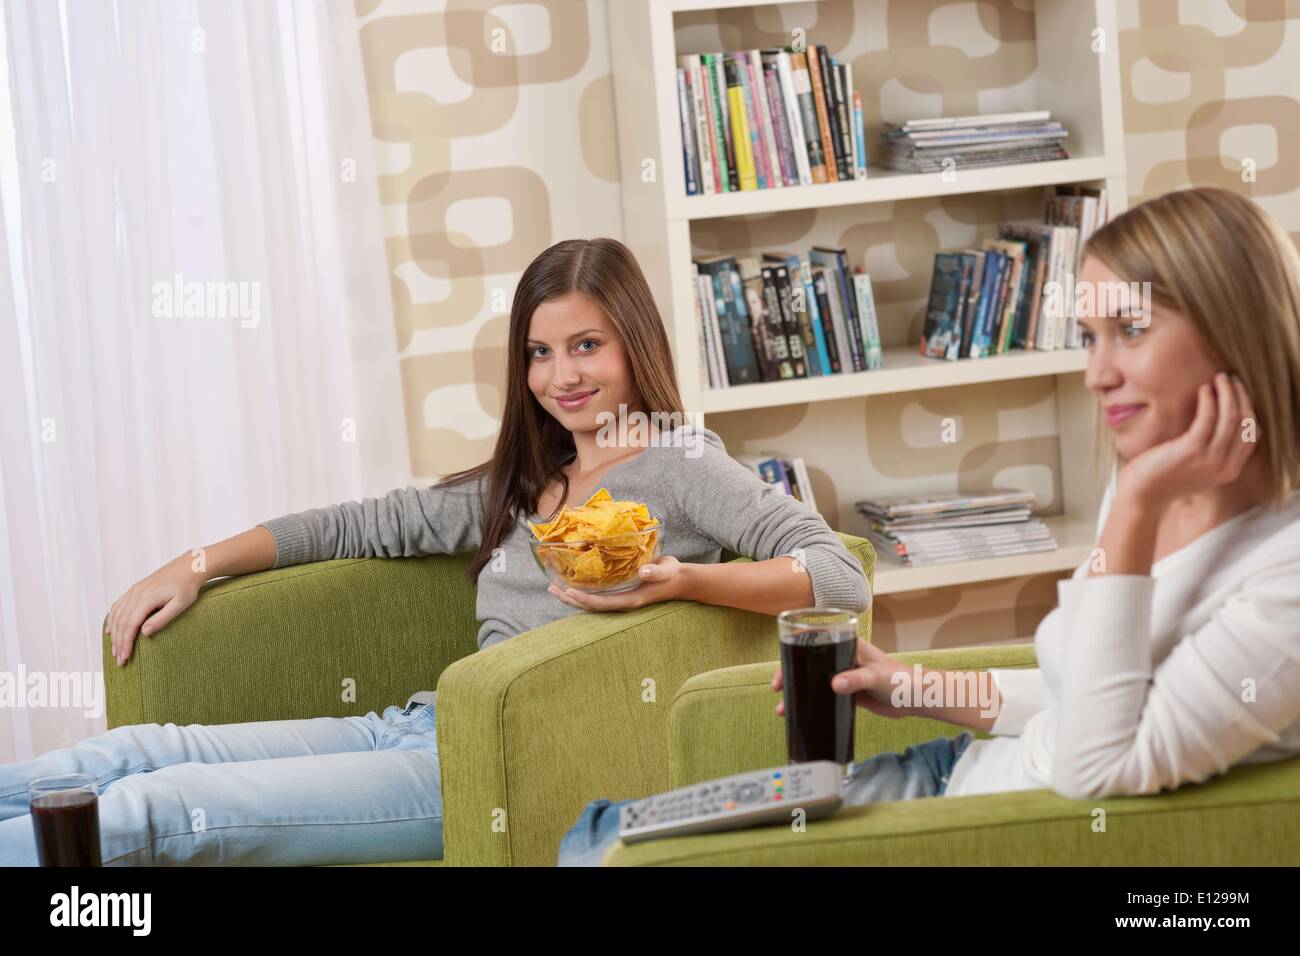 06 novembre 2009 - 6 novembre 2009 - Les Étudiants - Deux female teenager regardent la télévision ensemble, manger des chips Banque D'Images